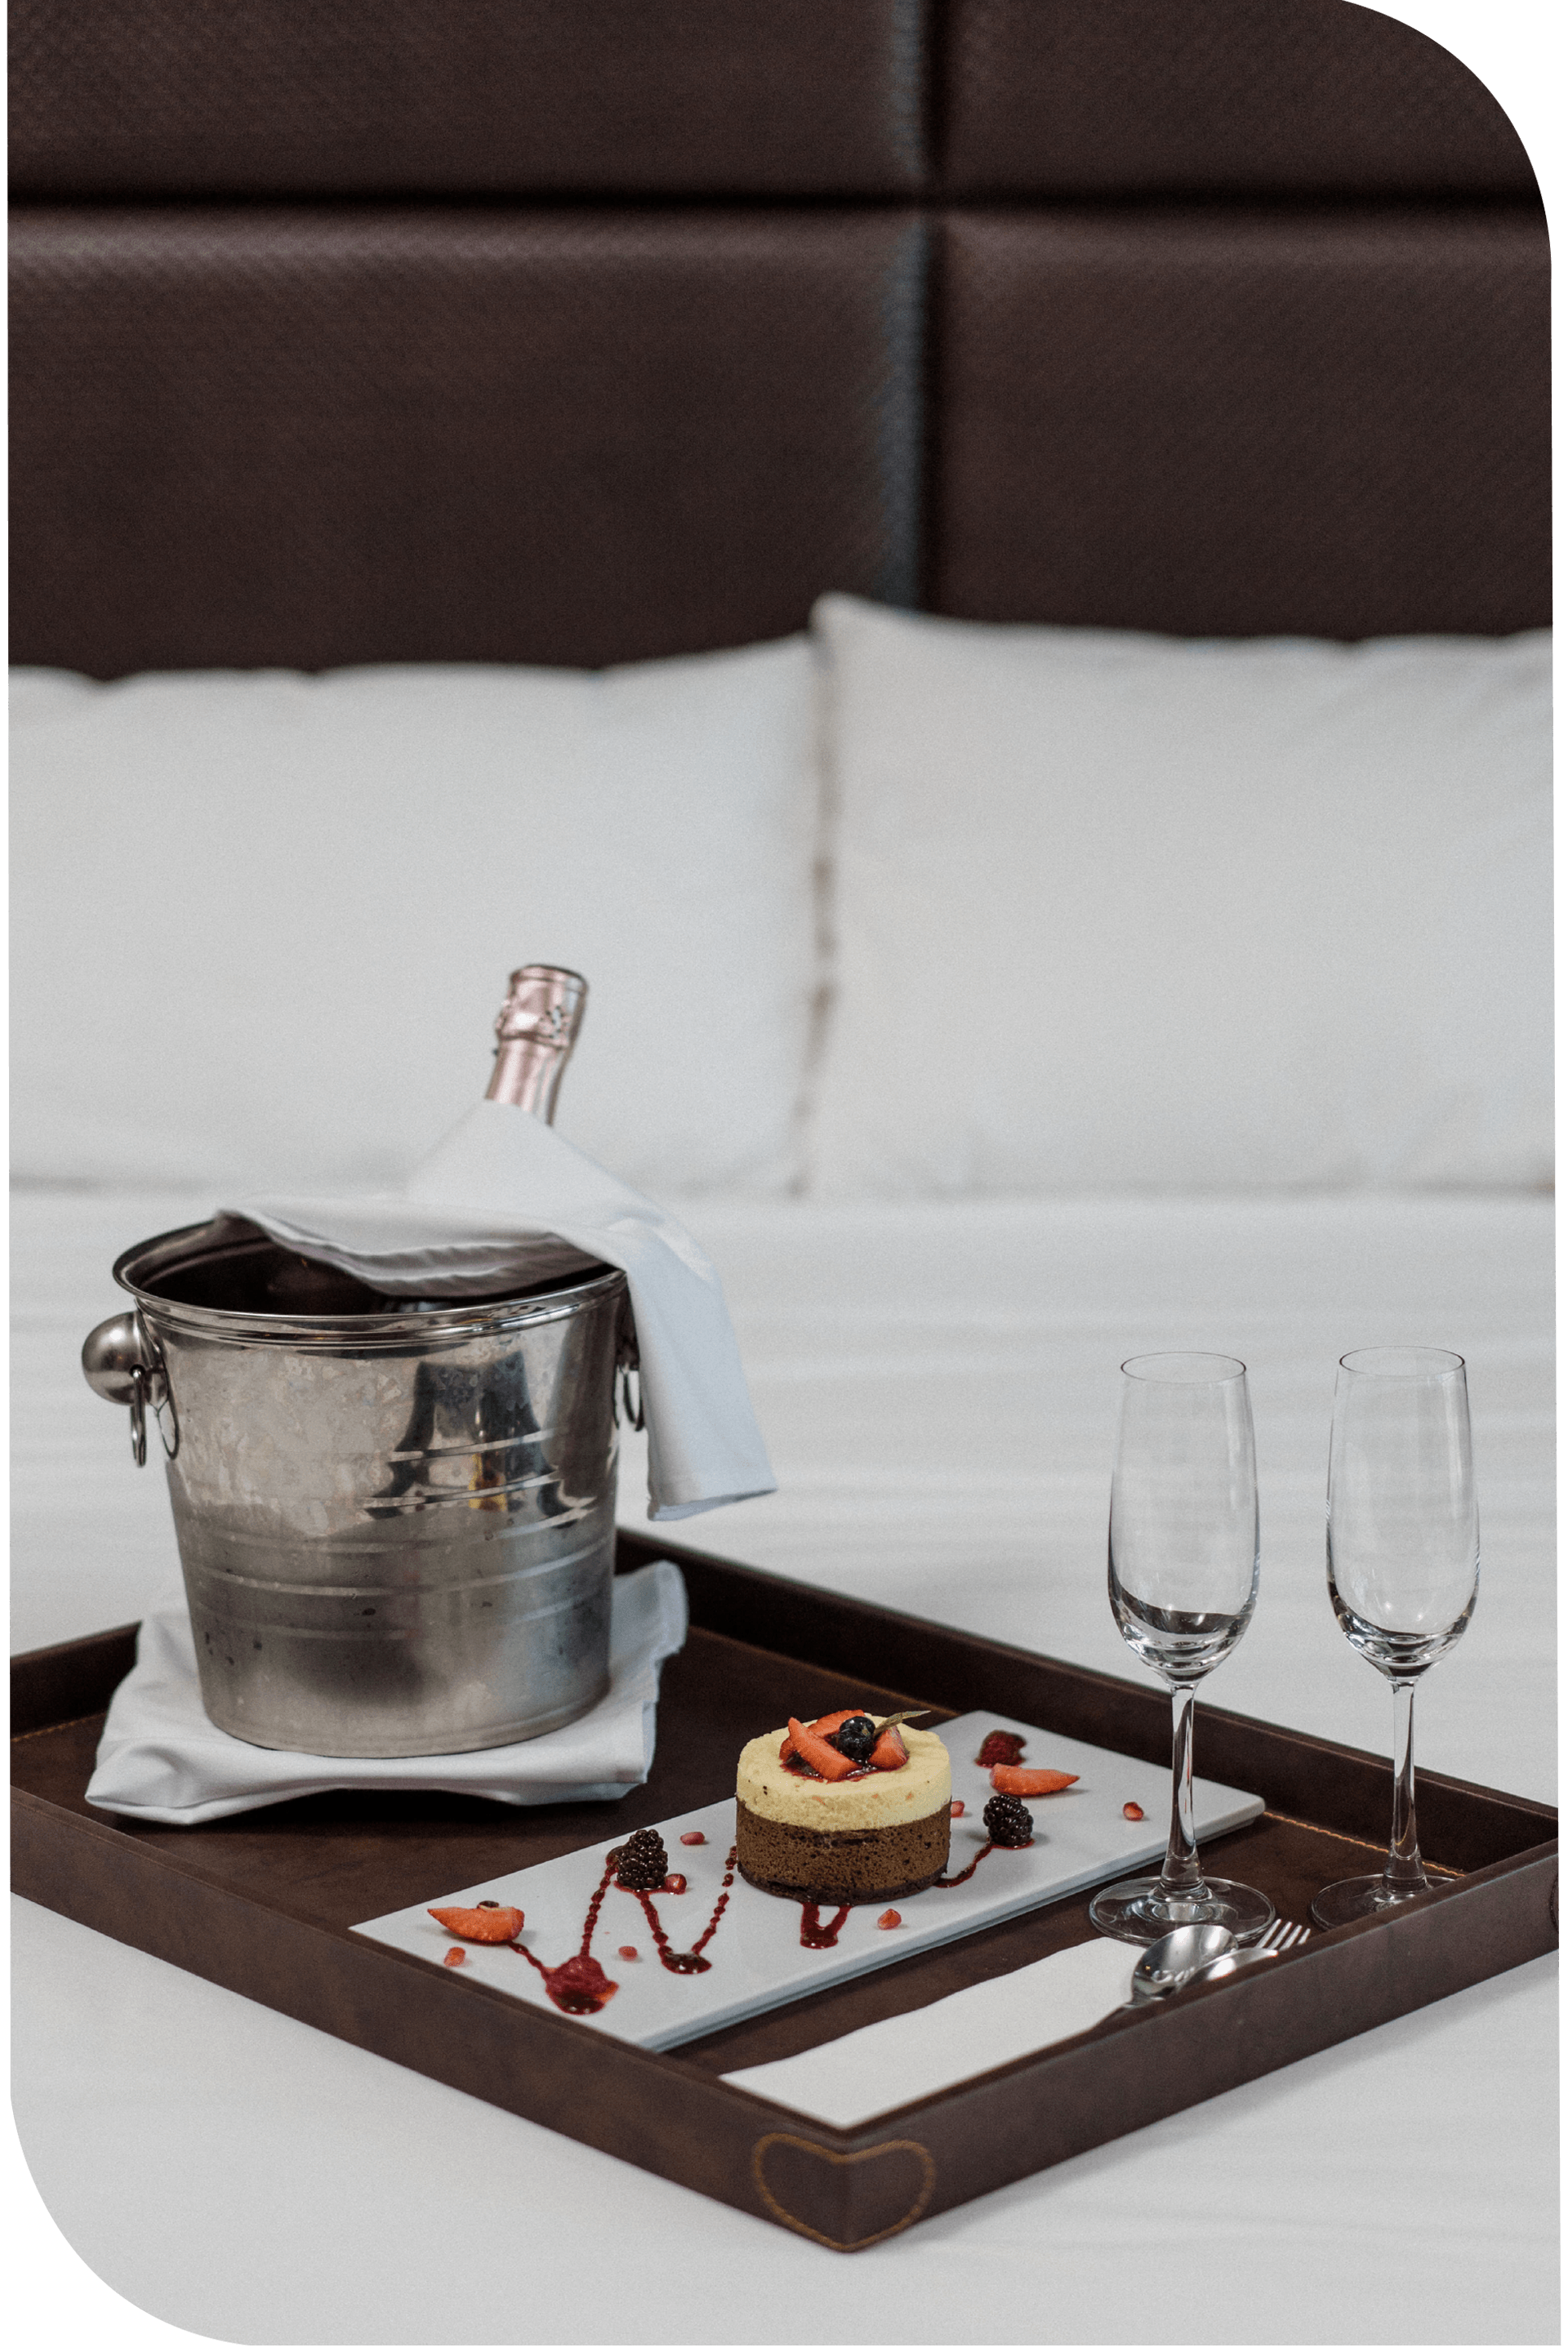 Una habitación de hotel con una bandeja de comida y champán sobre la cama.